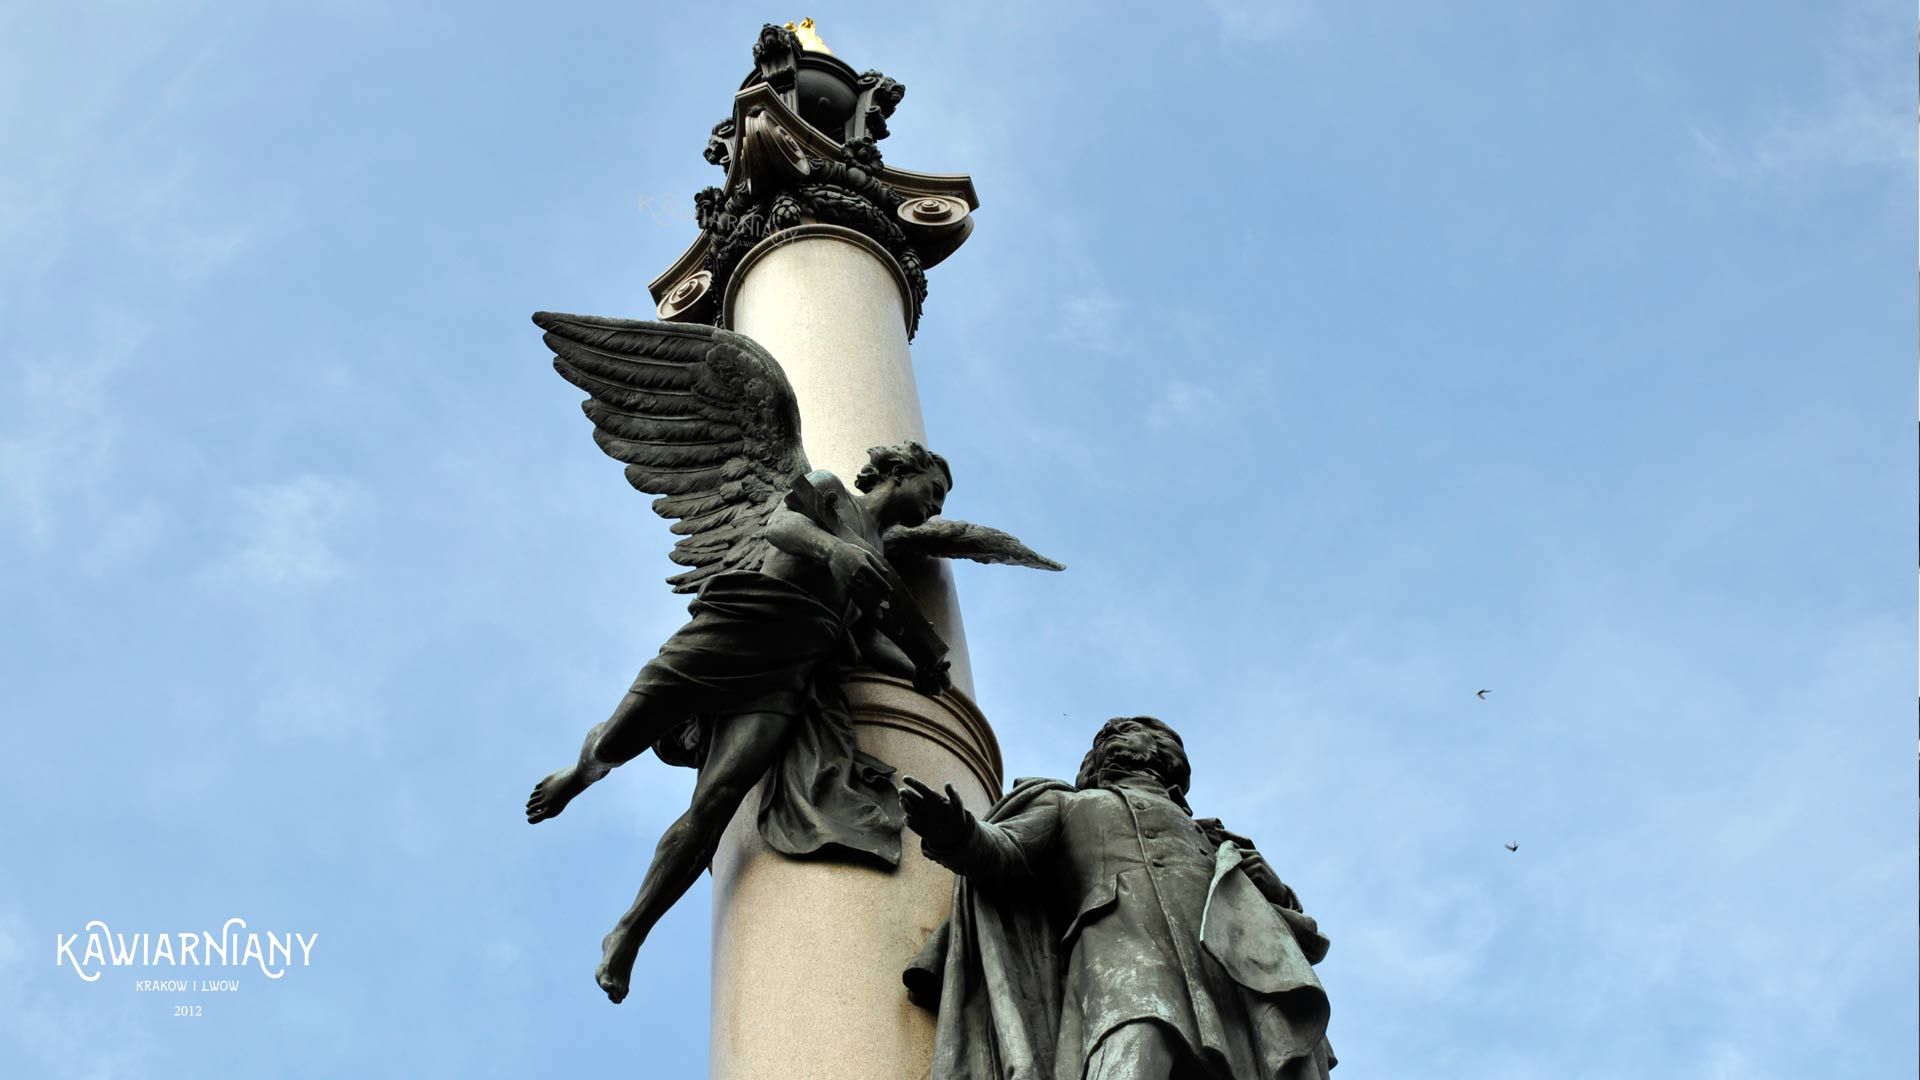 Pomnik Adama Mickiewicza, Lwów